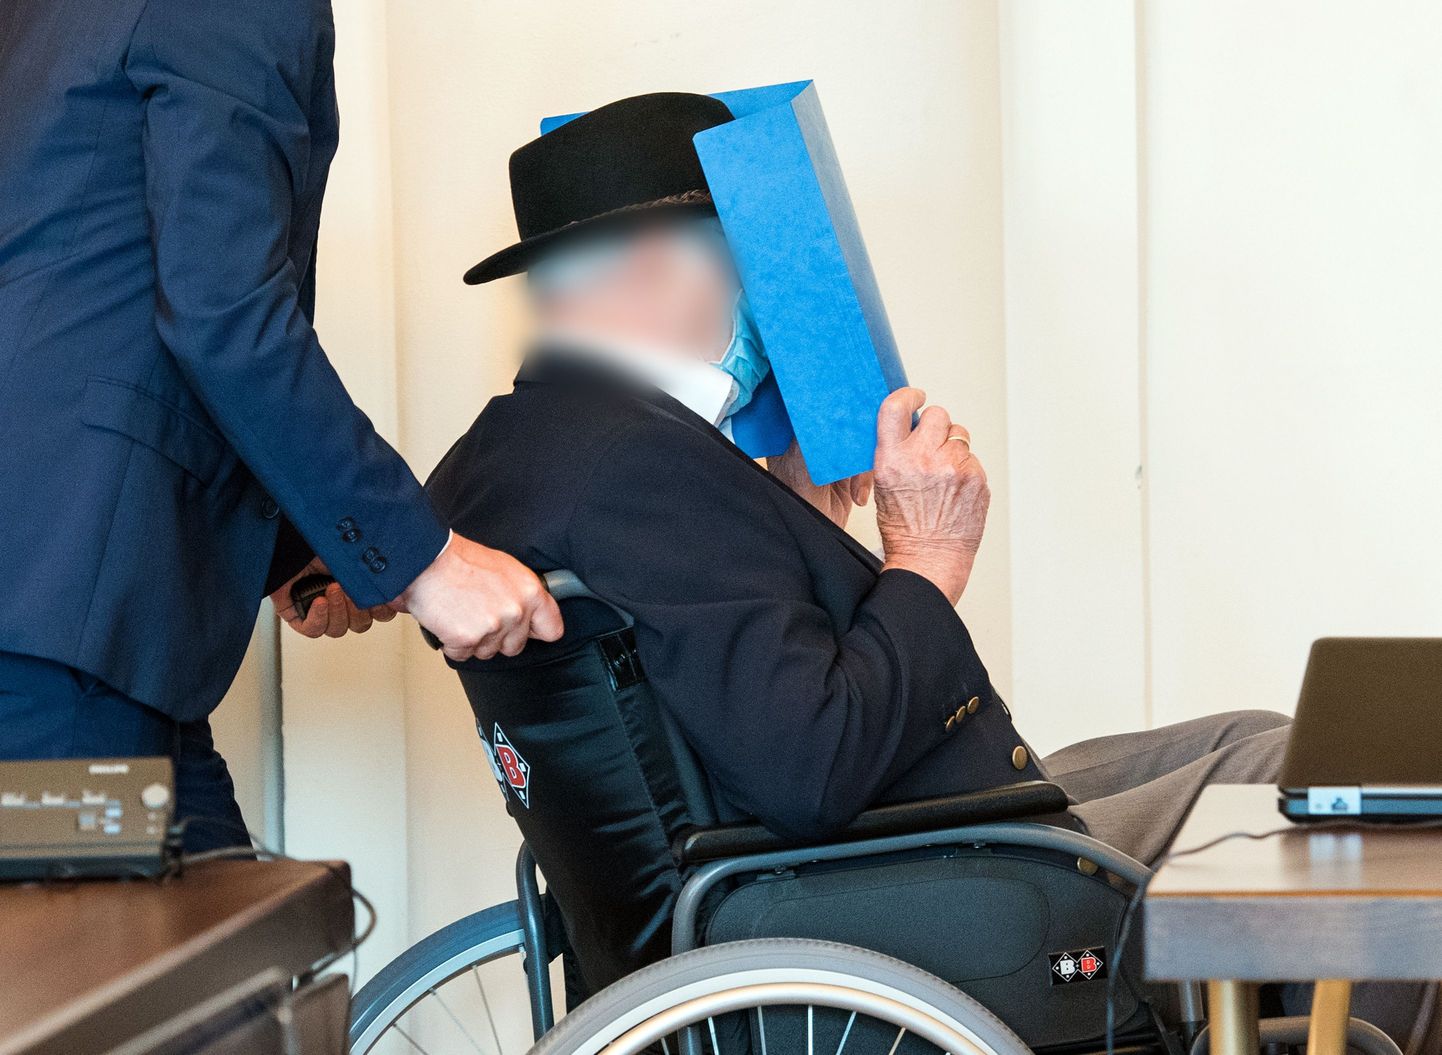 Hamburgi kohus leidis, et 93-aastane Bruno Dey on kaasosaline Teise maailmasõja ajal sooritatud inimsusevastastes kuritegudes.